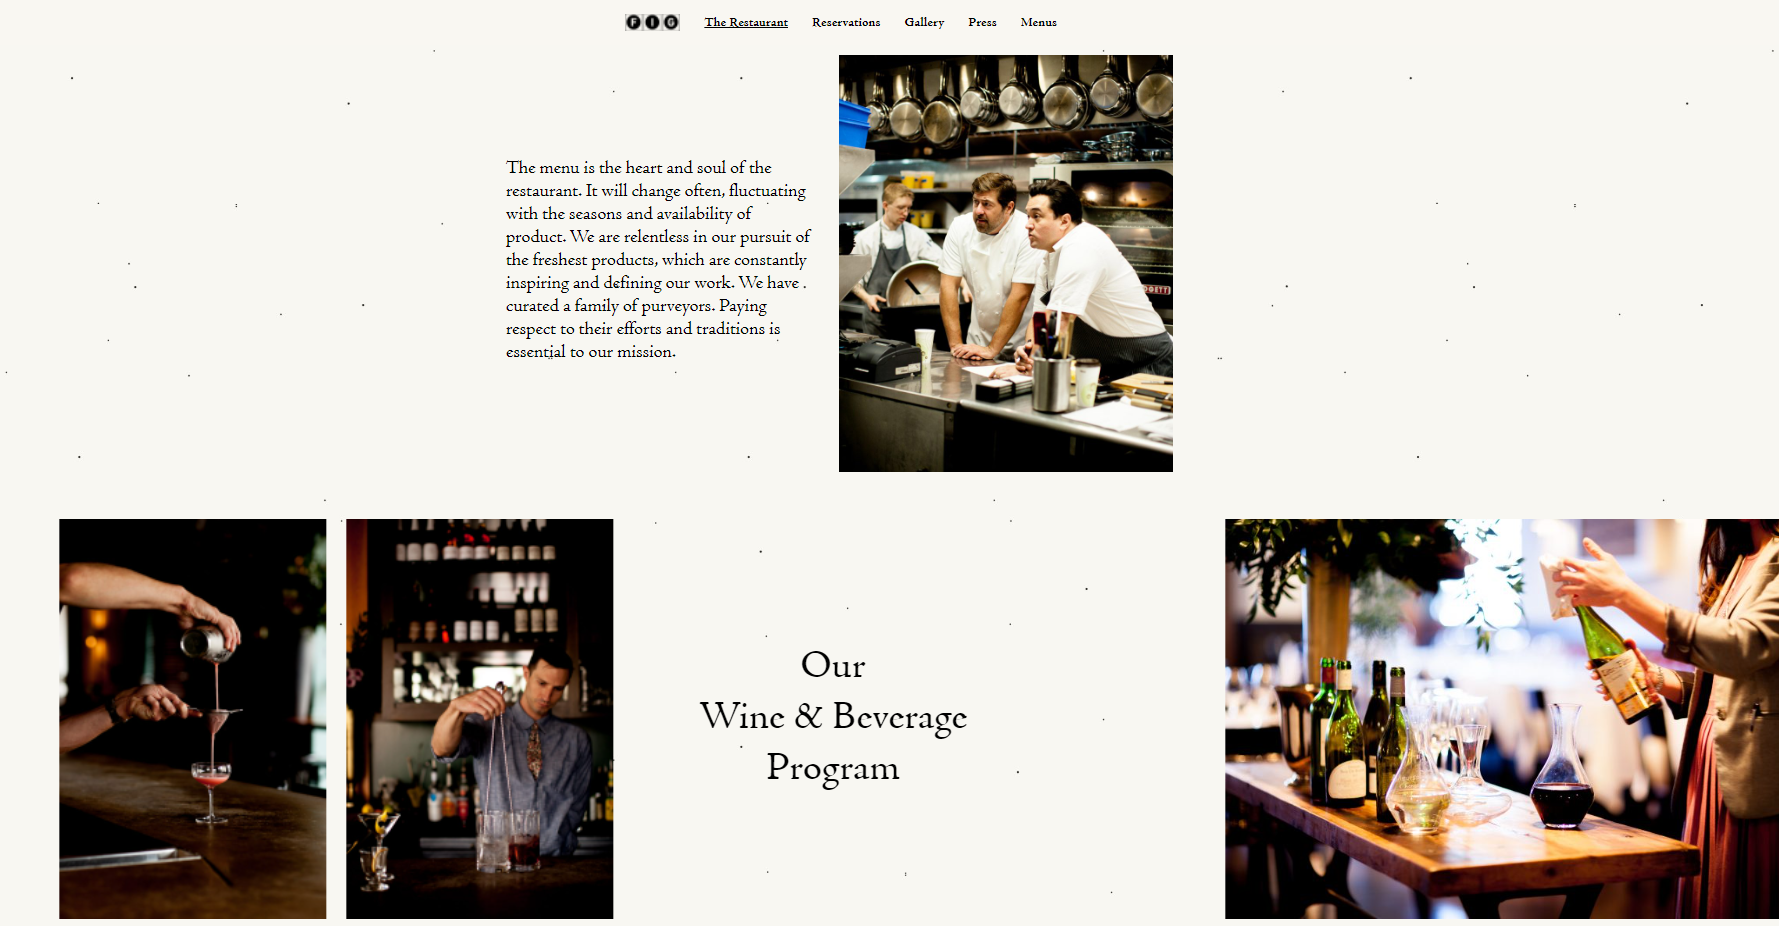 Strona internetowa restauracji FIG jest przejrzysta i bogata w zdjęcia